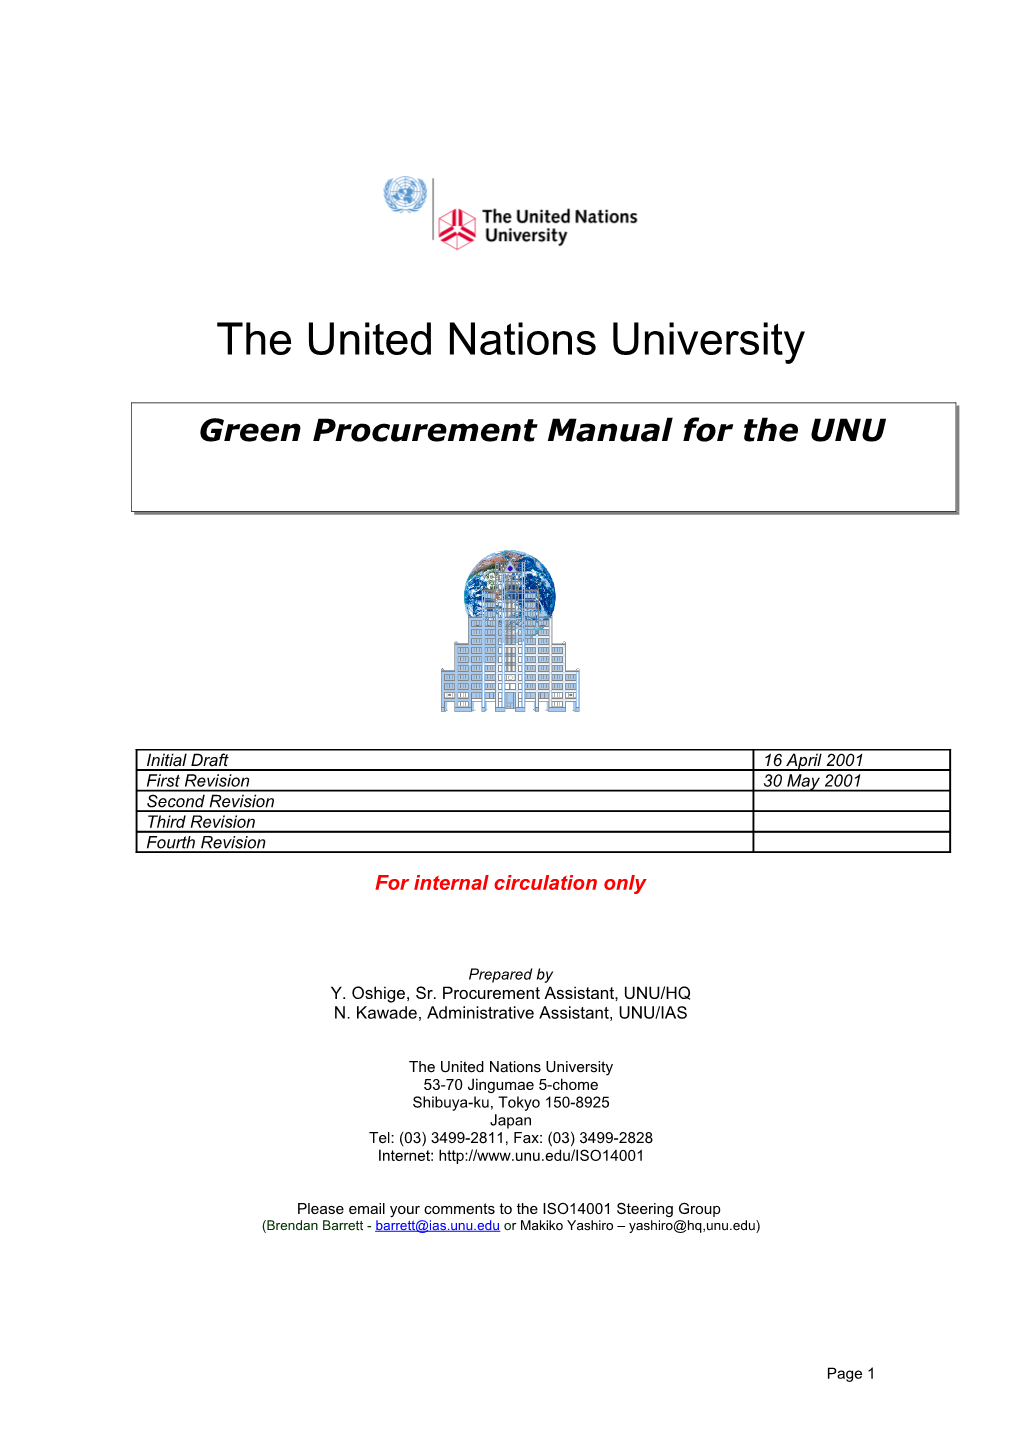 Green Procurement in the UNU